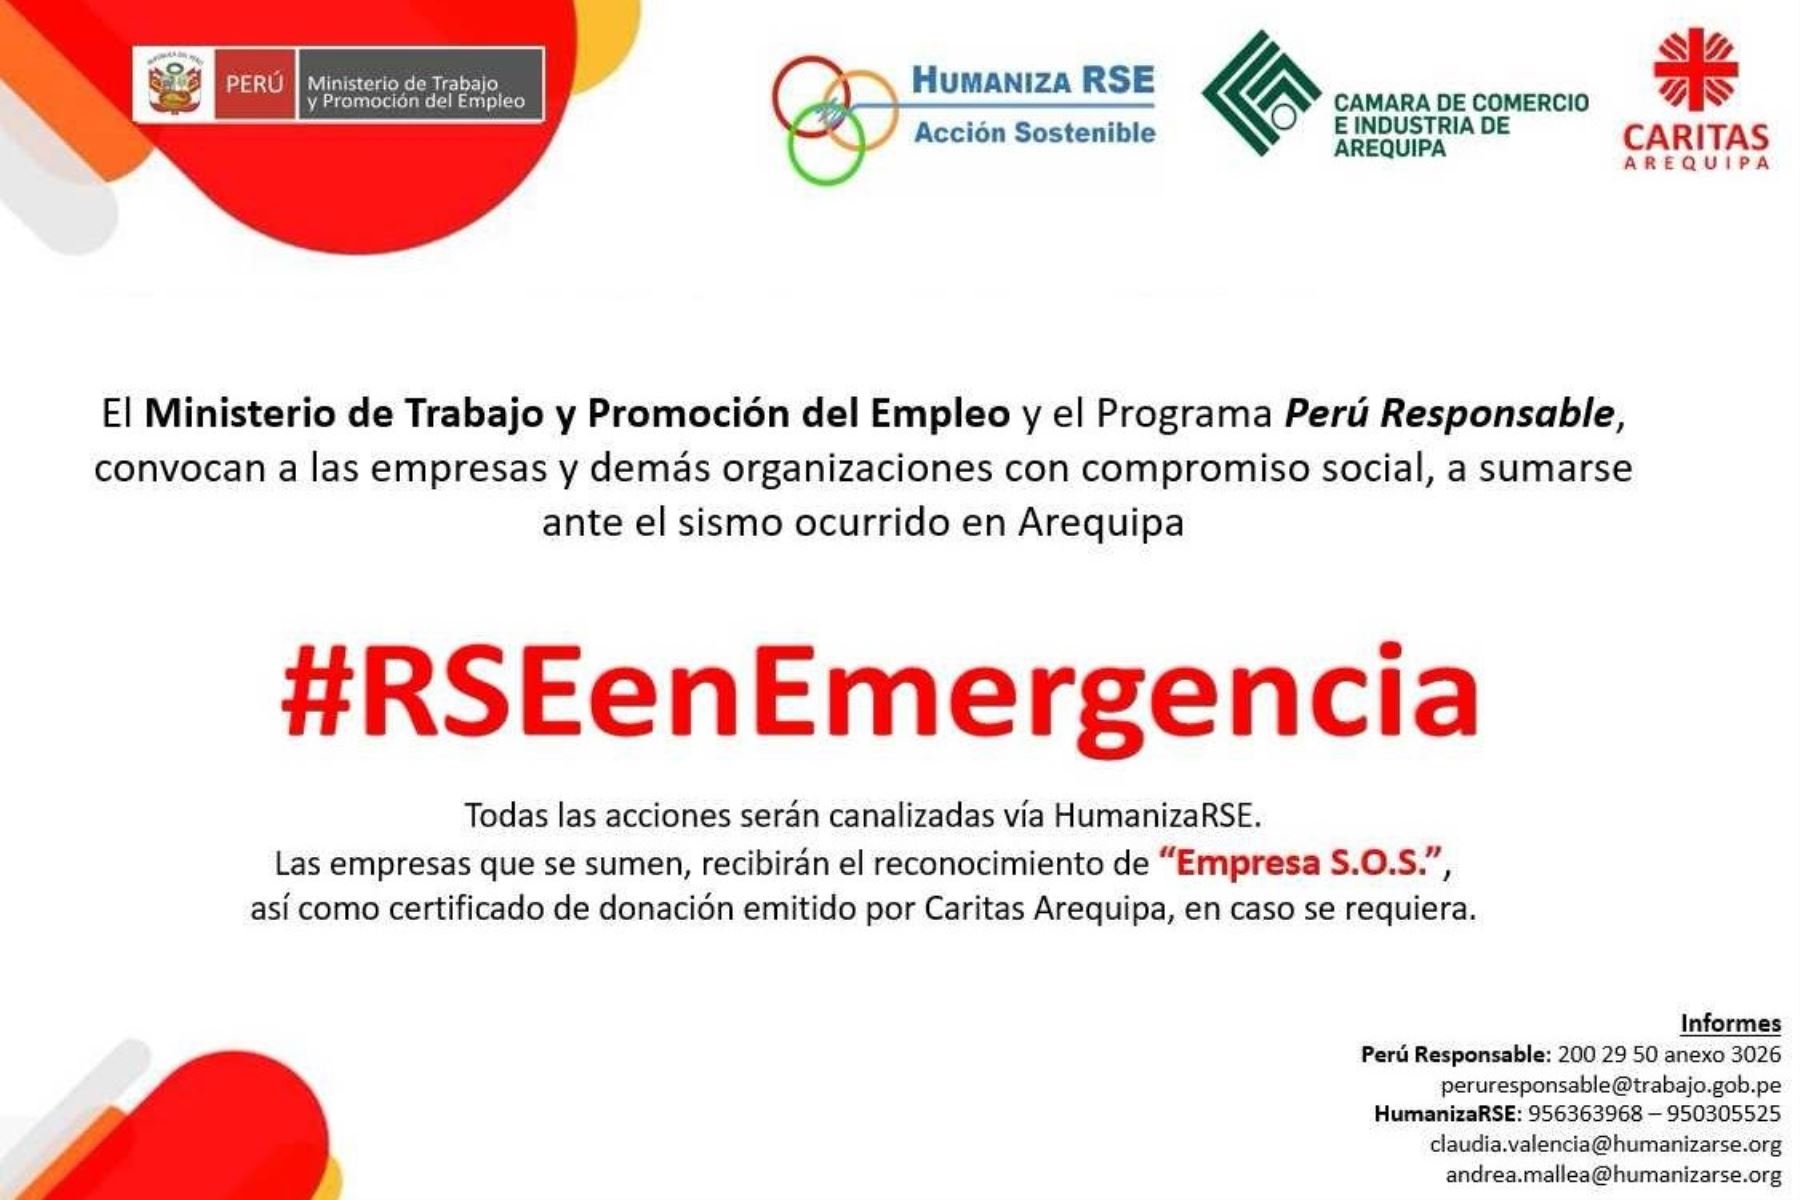 El Ministerio de Trabajo y Promoción del Empleo (MTPE), a través de su programa Perú Responsable, hizo un llamado a las empresas y organizaciones para colaborar en la normalización de los servicios básicos y apoyar a los damnificados del sismo de 6.8 grados ocurrido la madrugada del domingo en Arequipa.